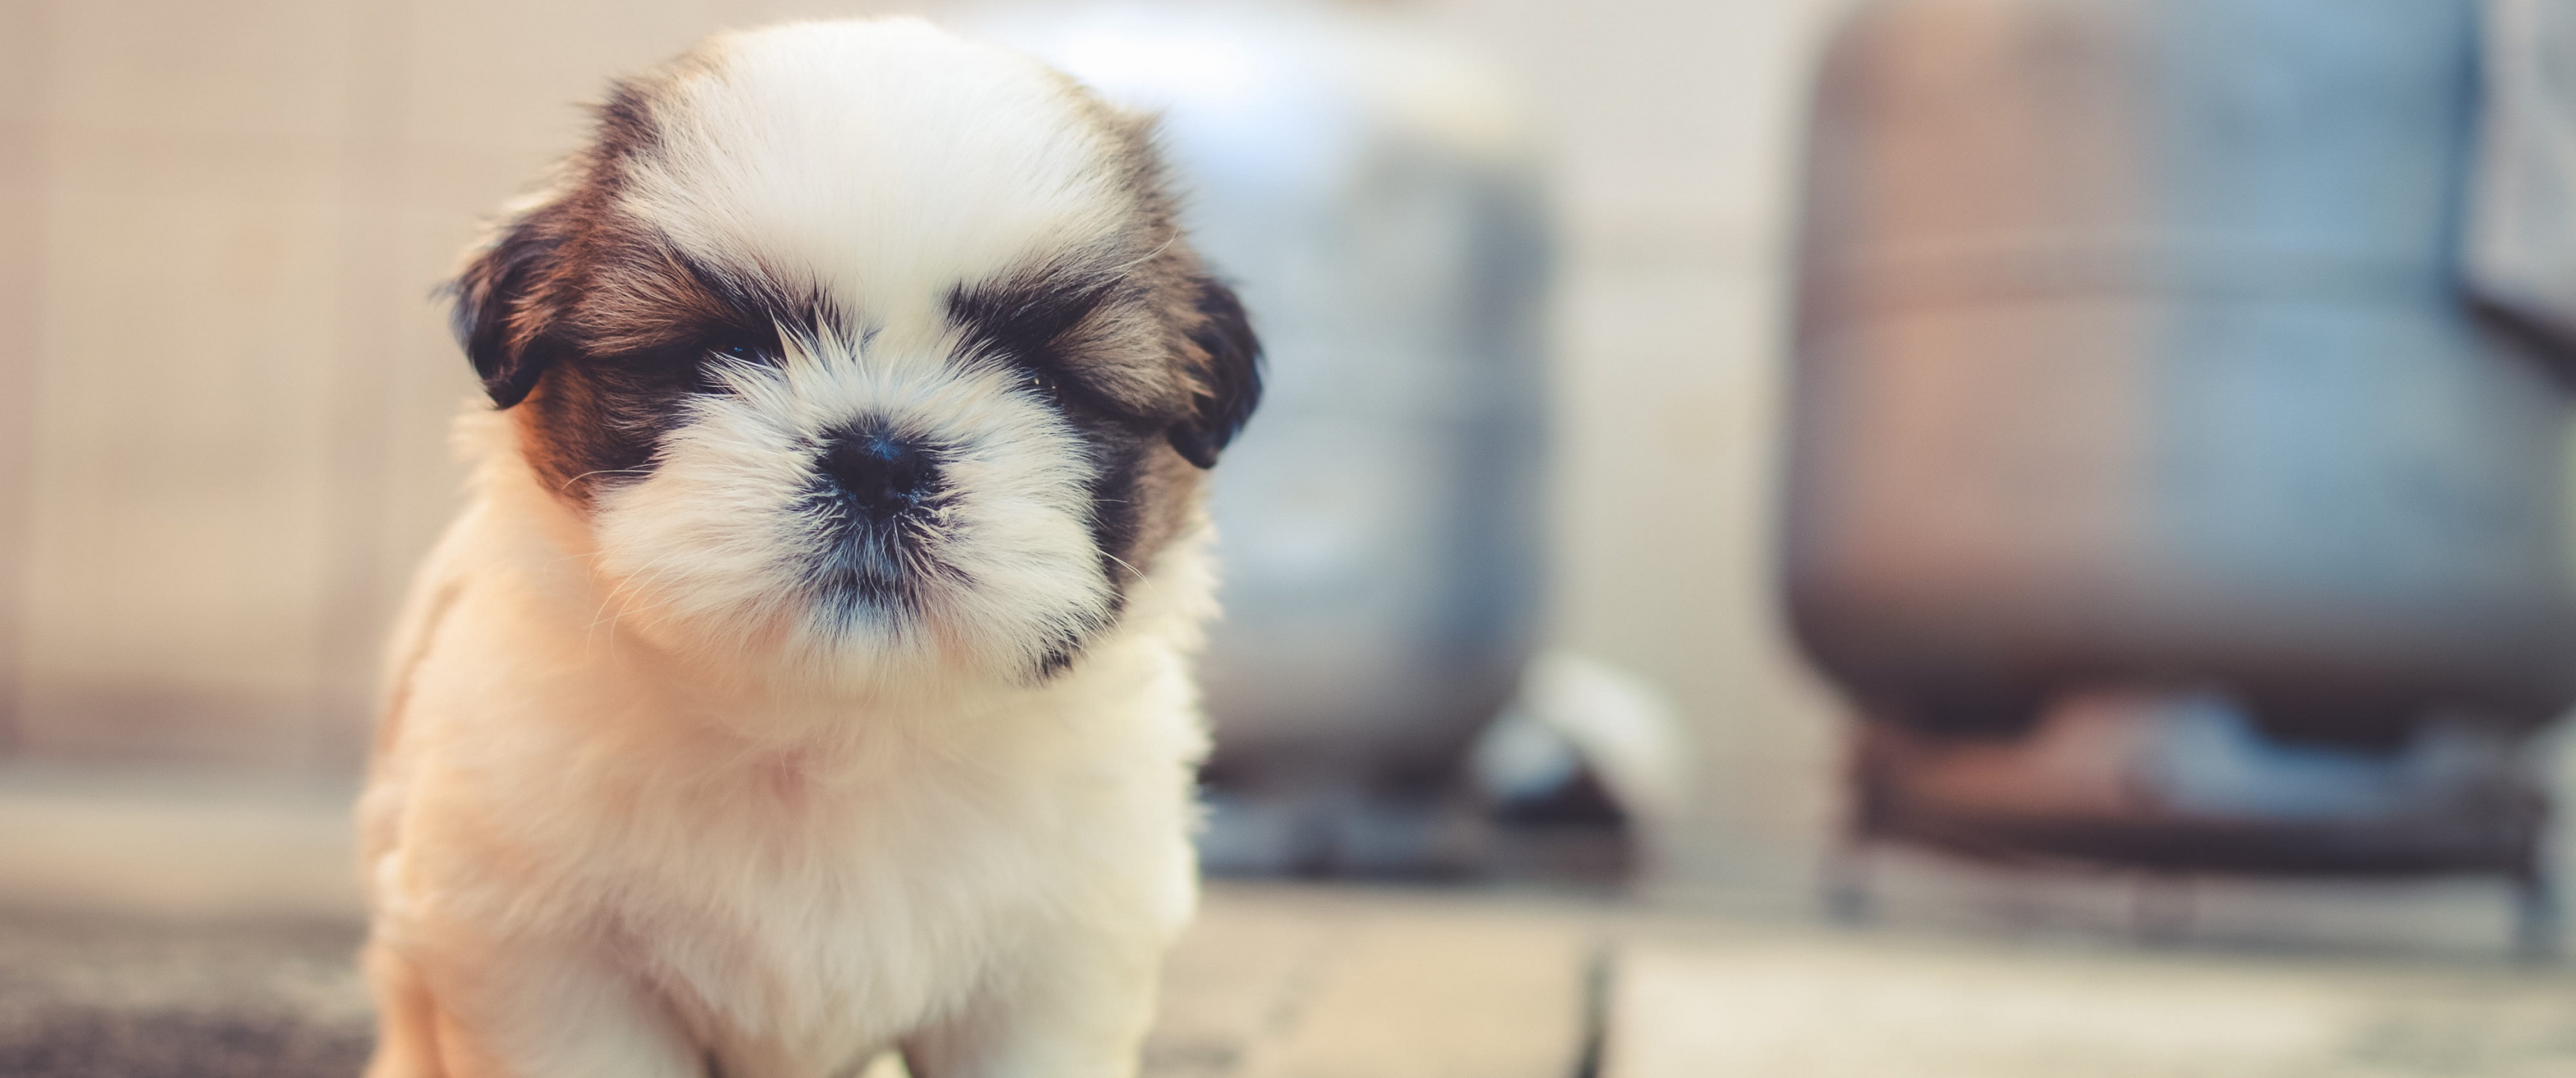 Cute puppies Wallpaper 4K, Saint Bernard, Cute dog, Adorable, Fluffy dog, Animals